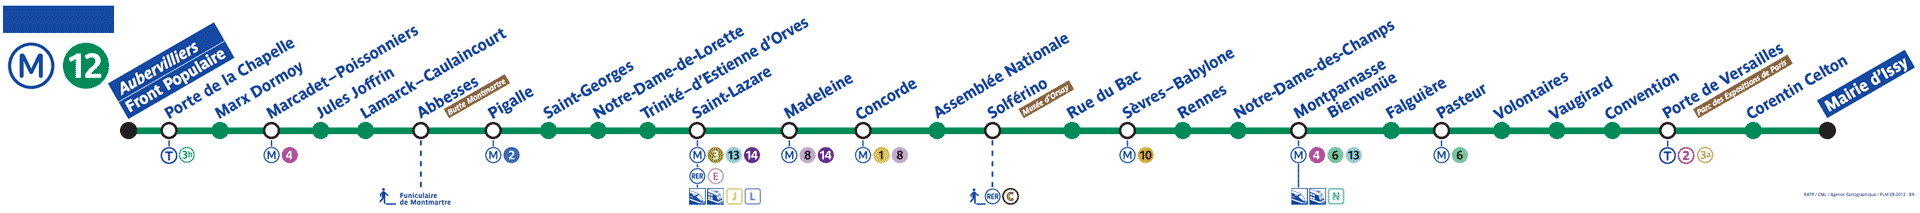 Paris Metro line 12 map